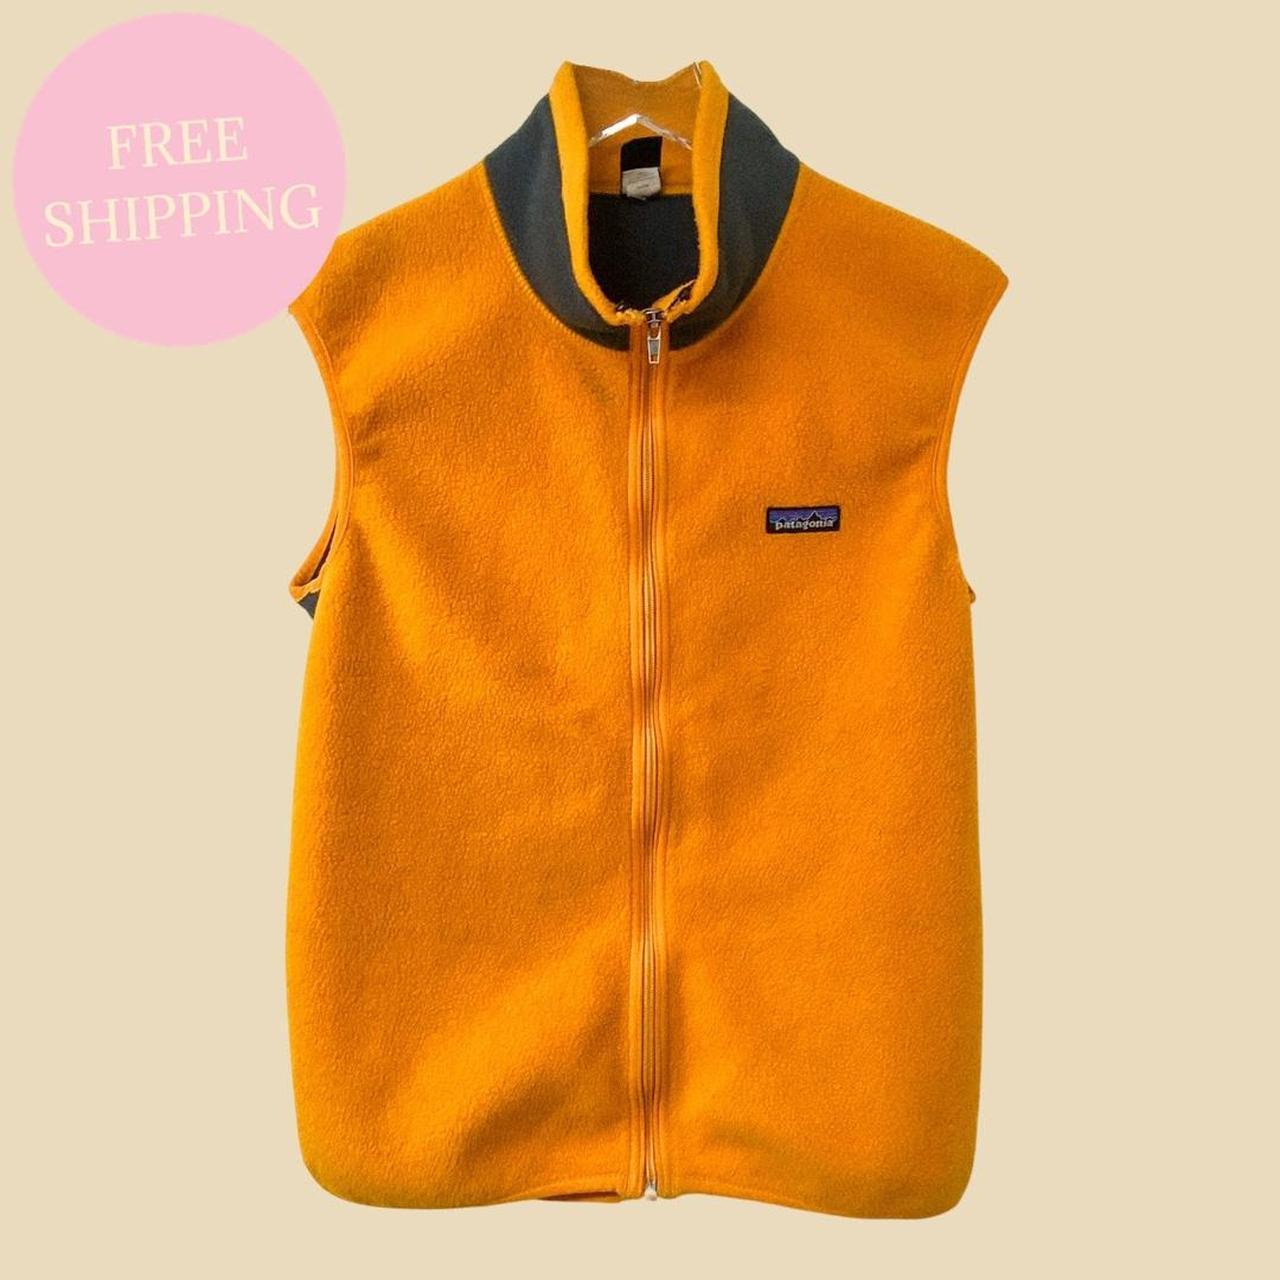 Vintage 90s Patagonia fleece vest | Made in USA 📦... - Depop